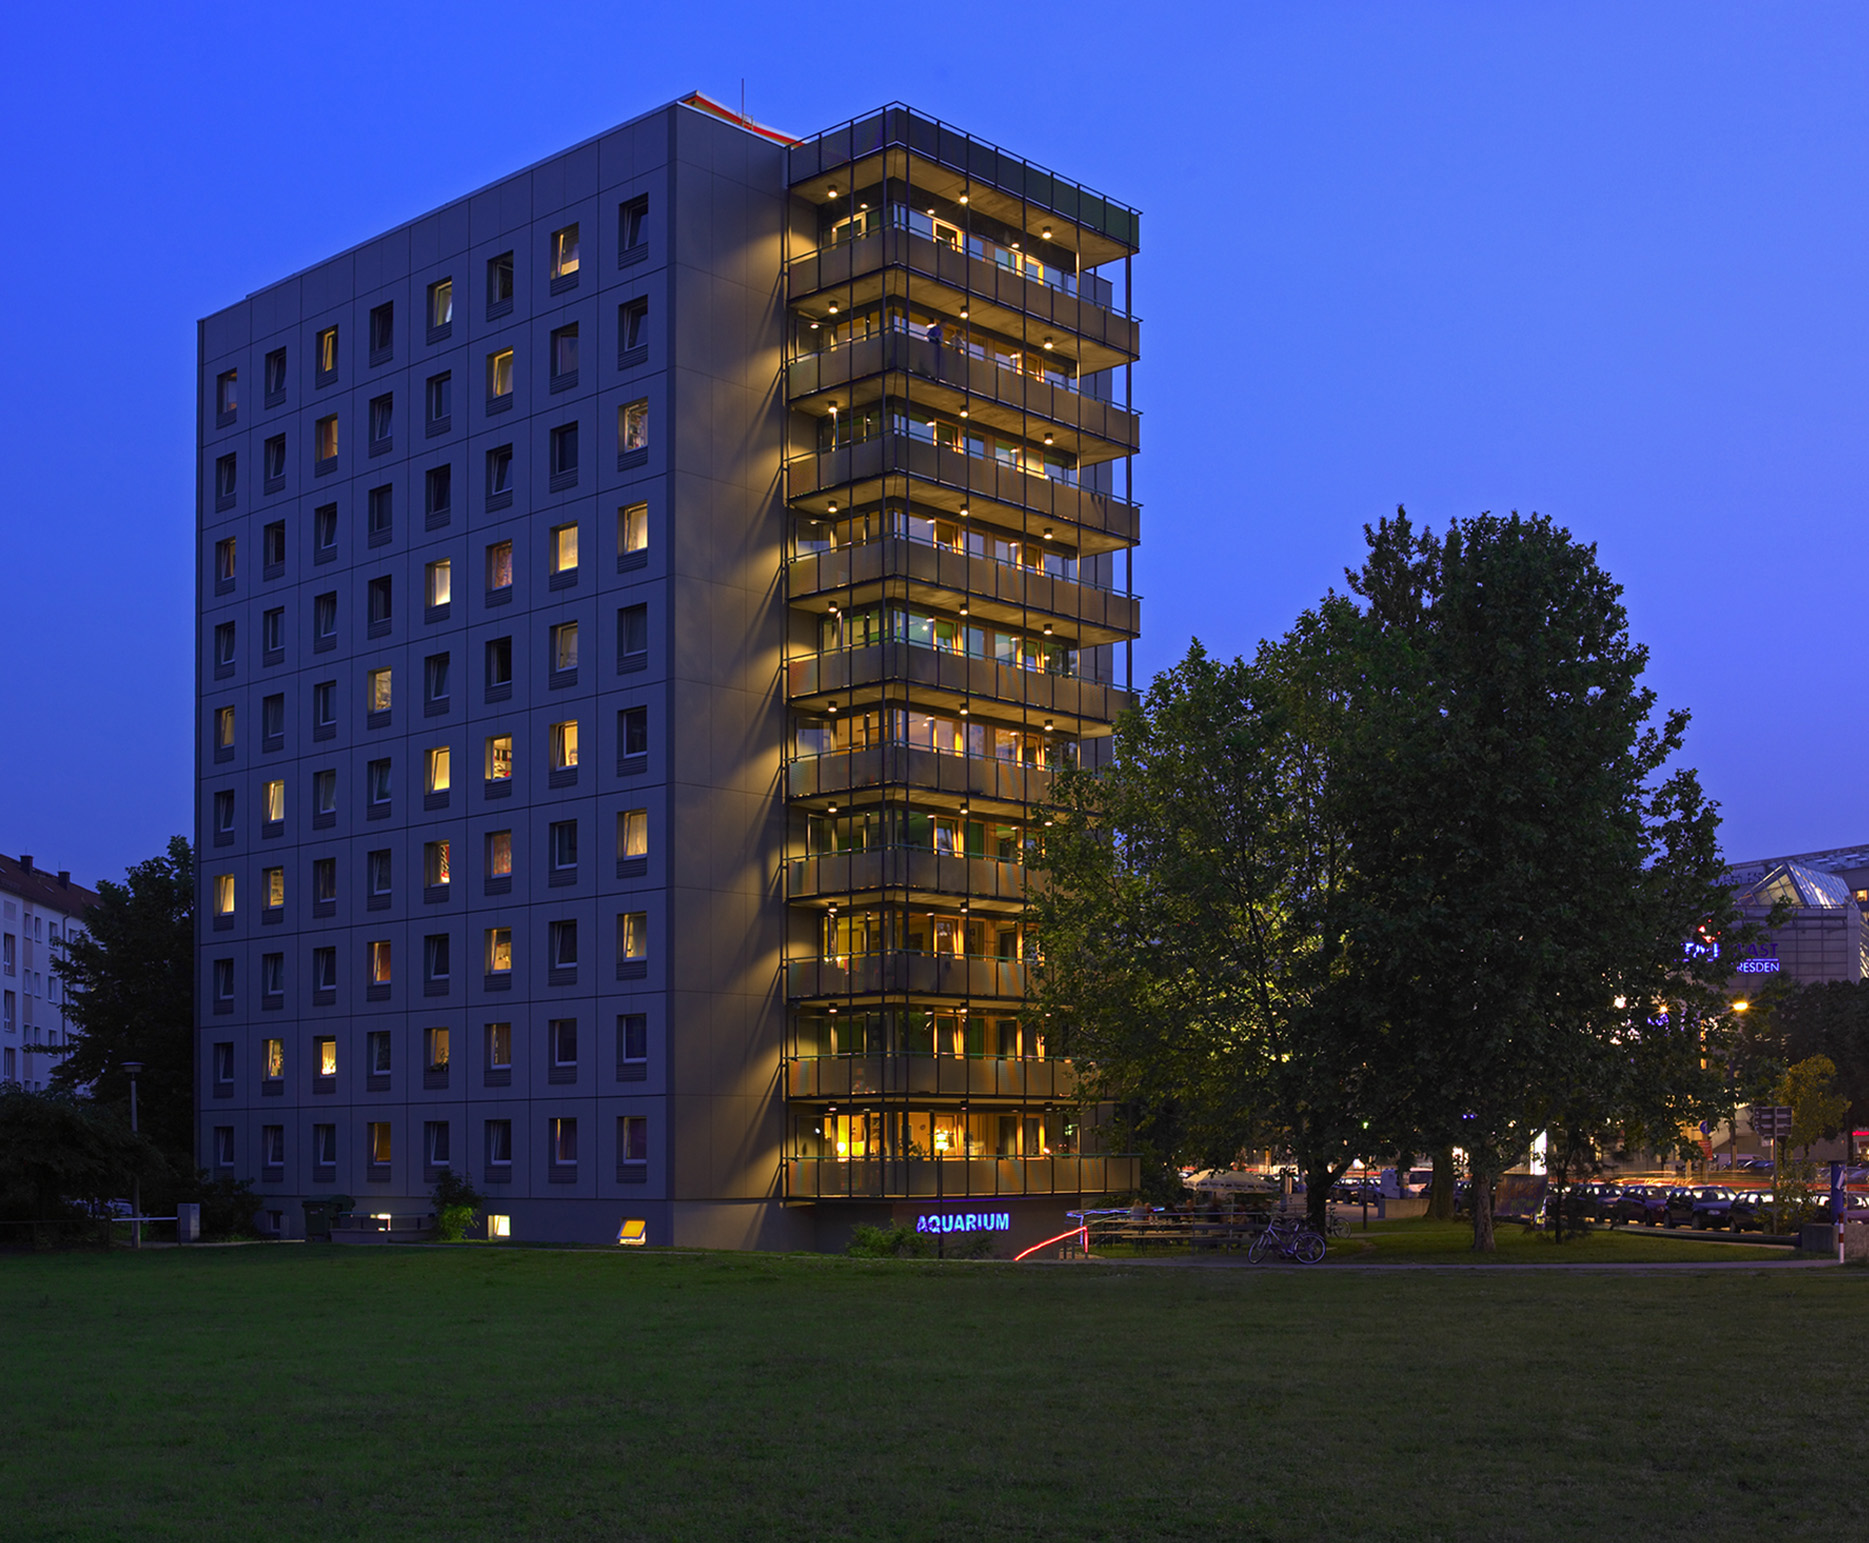 Ein Bild vom Studentenwohnheim Dresden: ein großes, einem Plattenbau ähnliches Gebäude mit großen Balkonen in jeder der insgesamt neun Etagen.